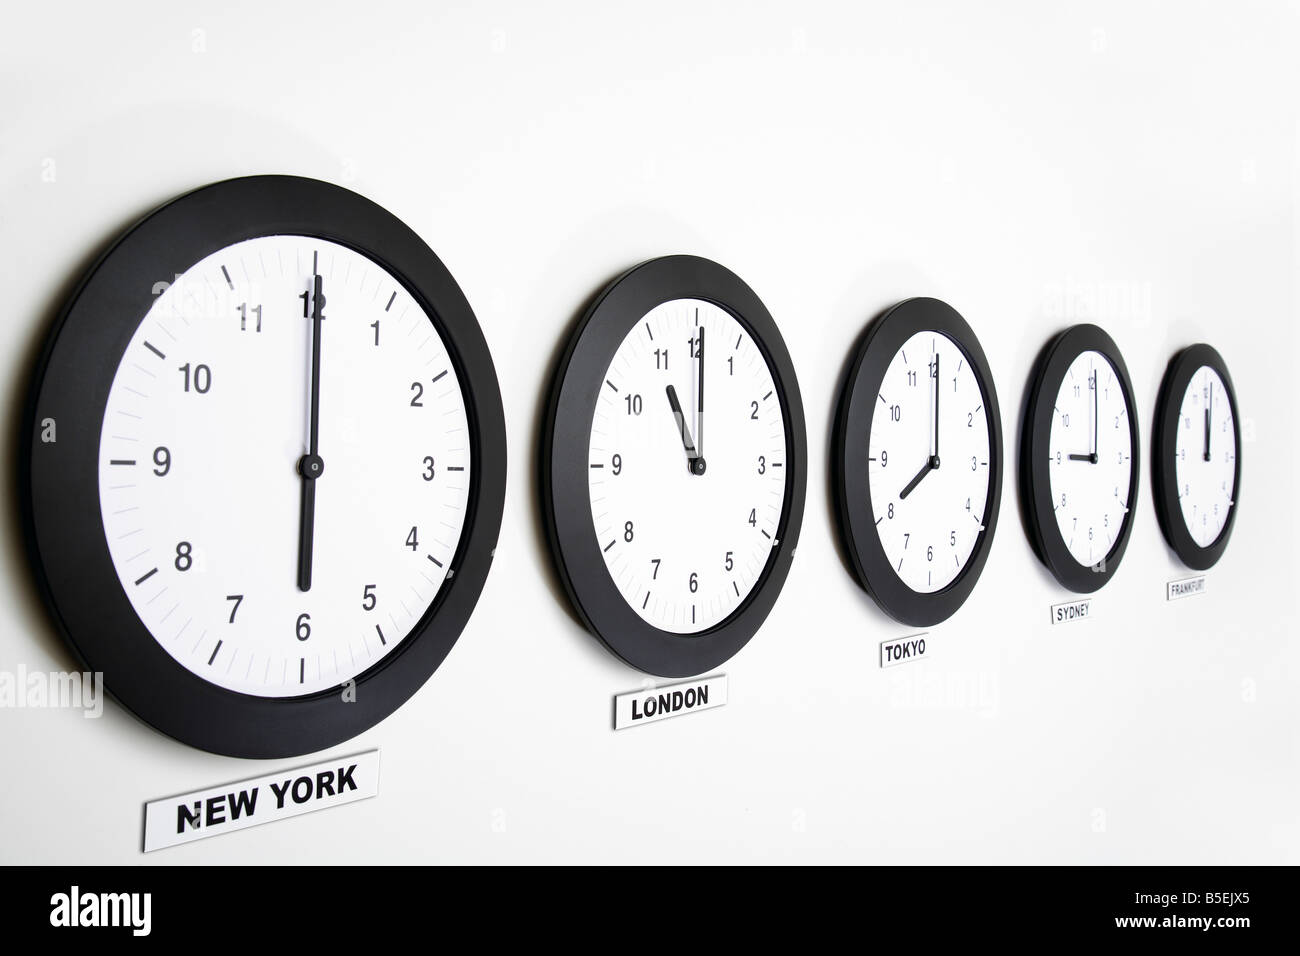 Timing more. Мировые часы настенные. Часы настенные Разное время. Часы с временными зонами настенные. Часы в гостинице.